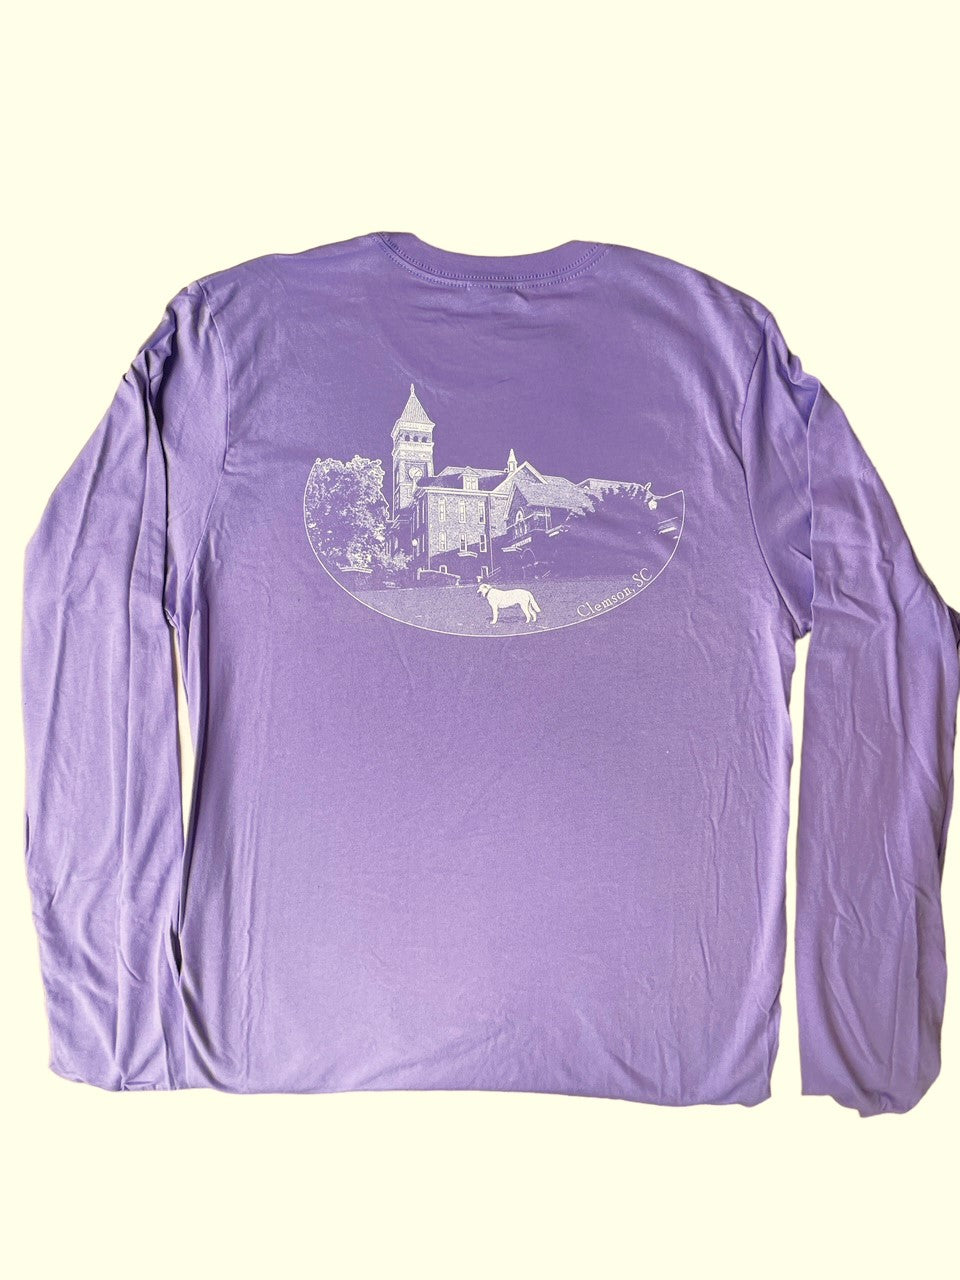 Clemson Long Sleeve T-shirt